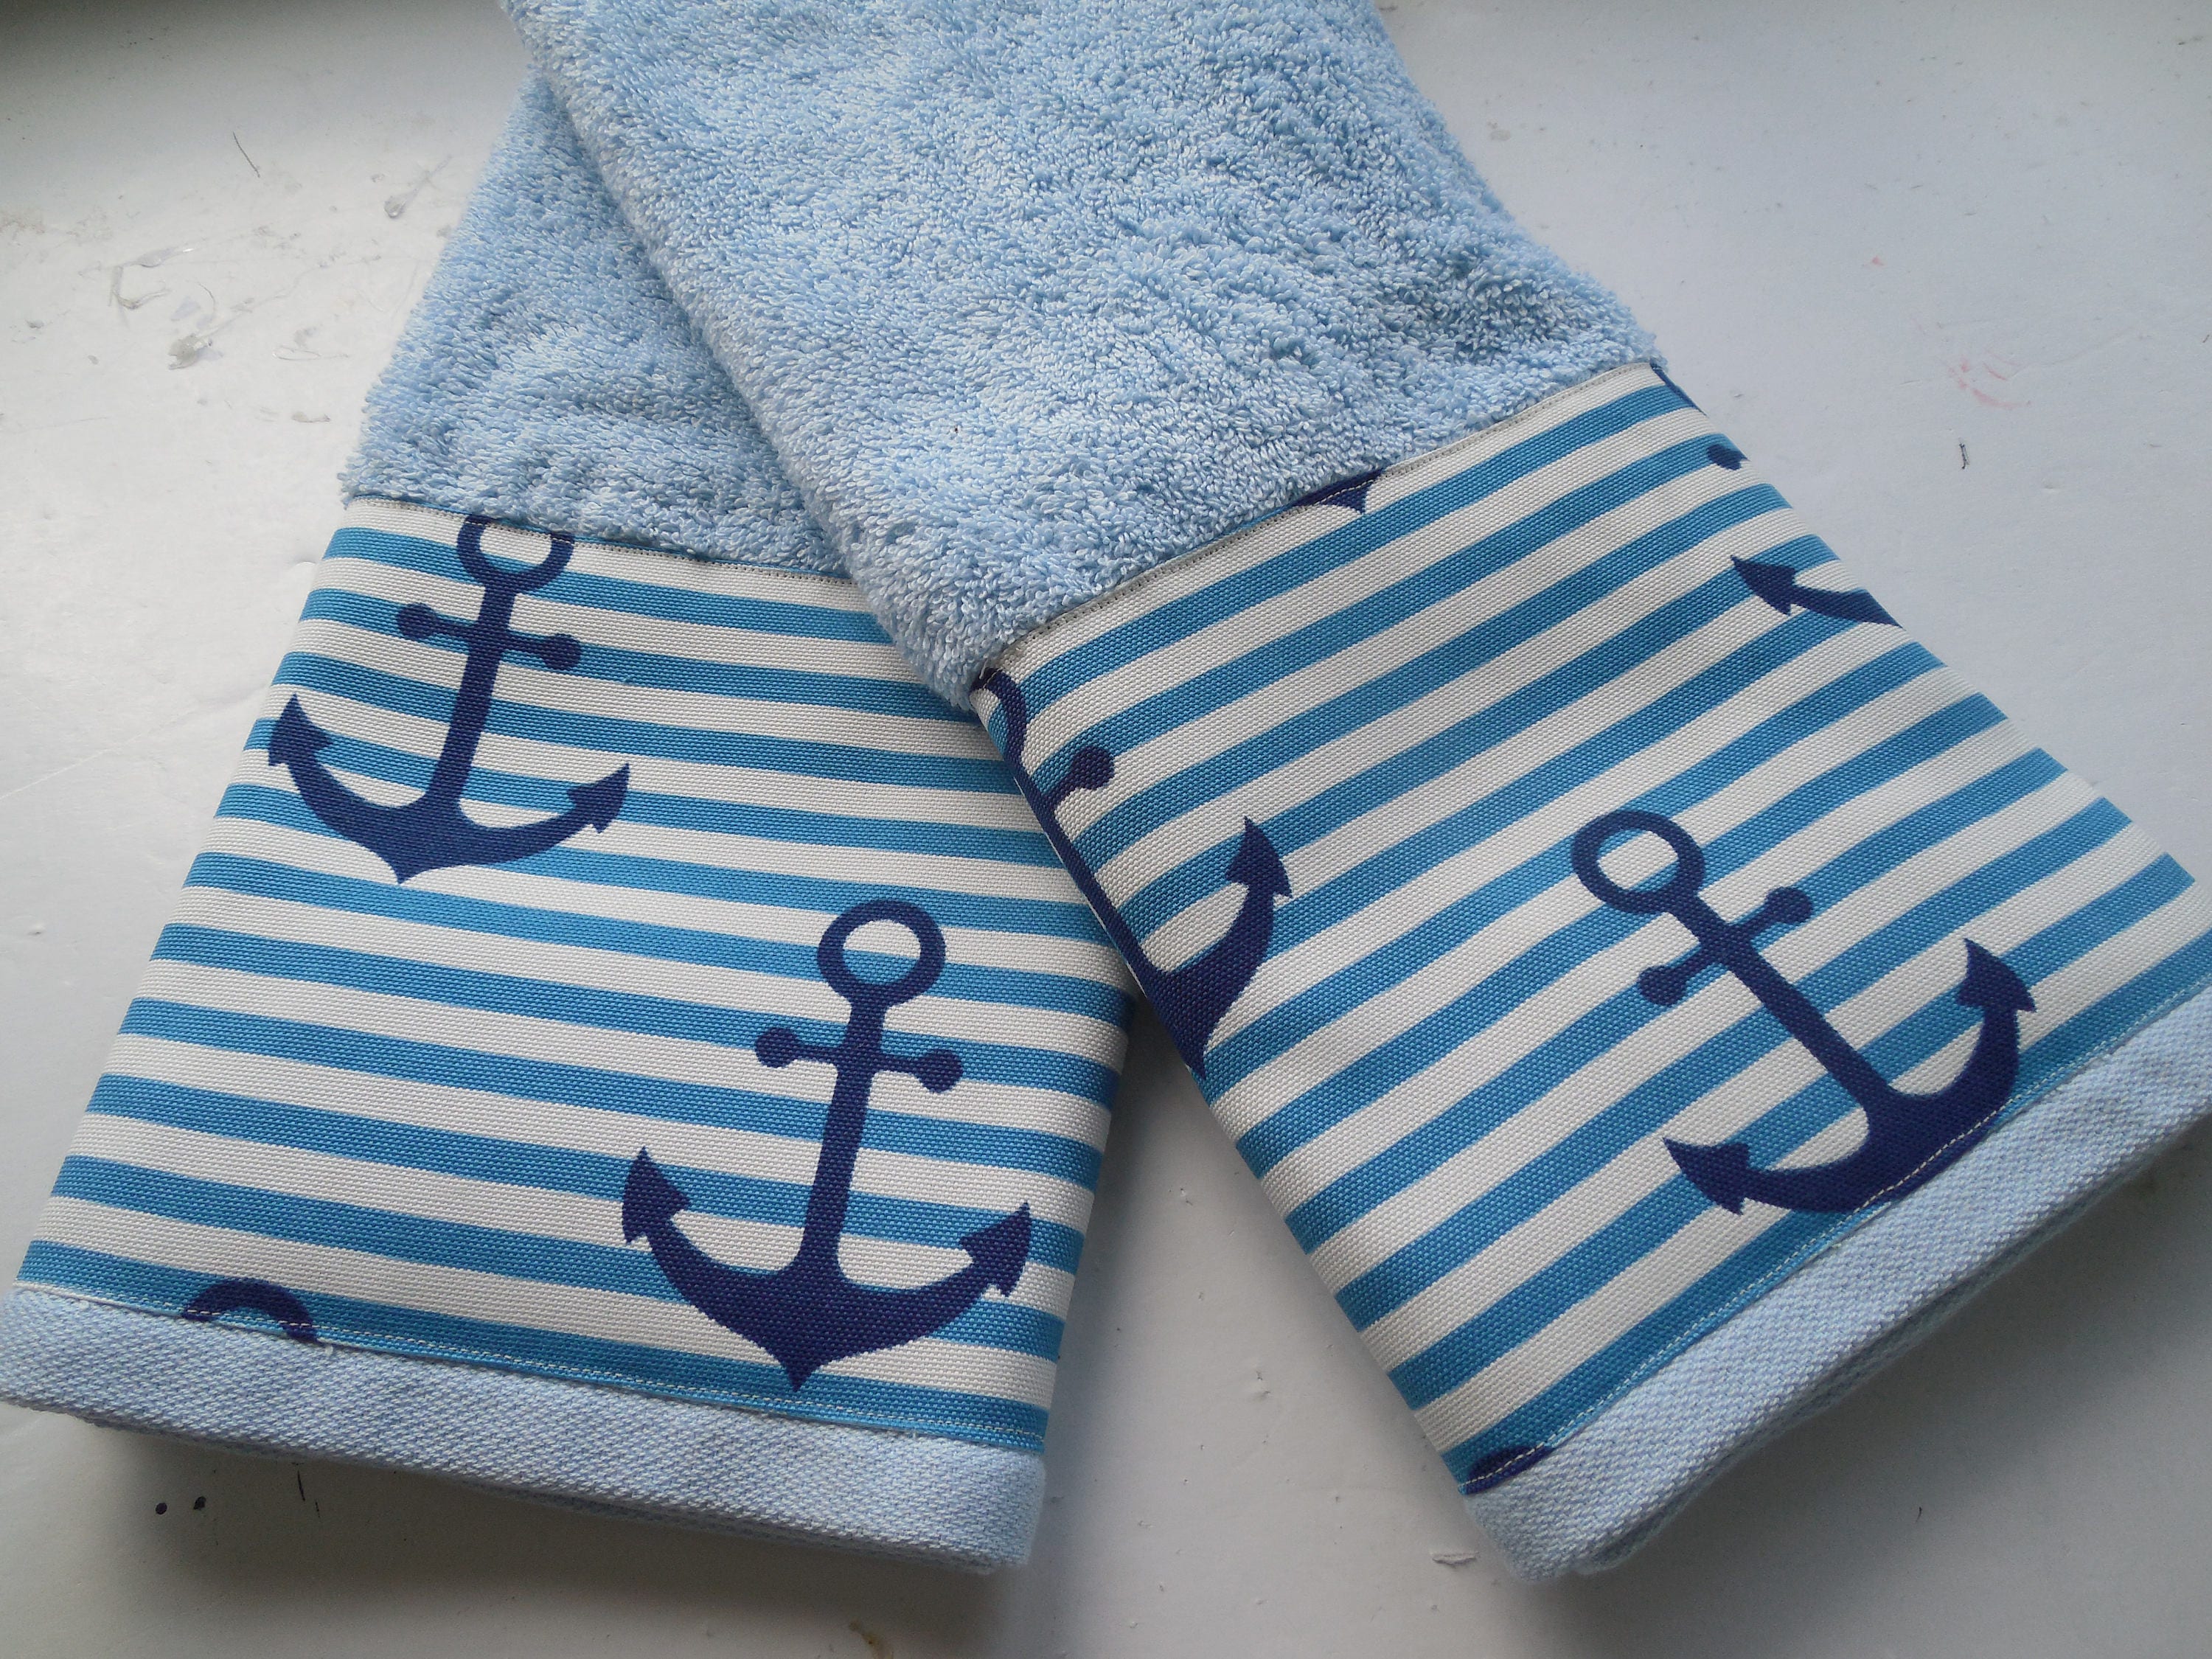 Anchor Hand Towel Guest Bathroom Decor Beach Navy Blue